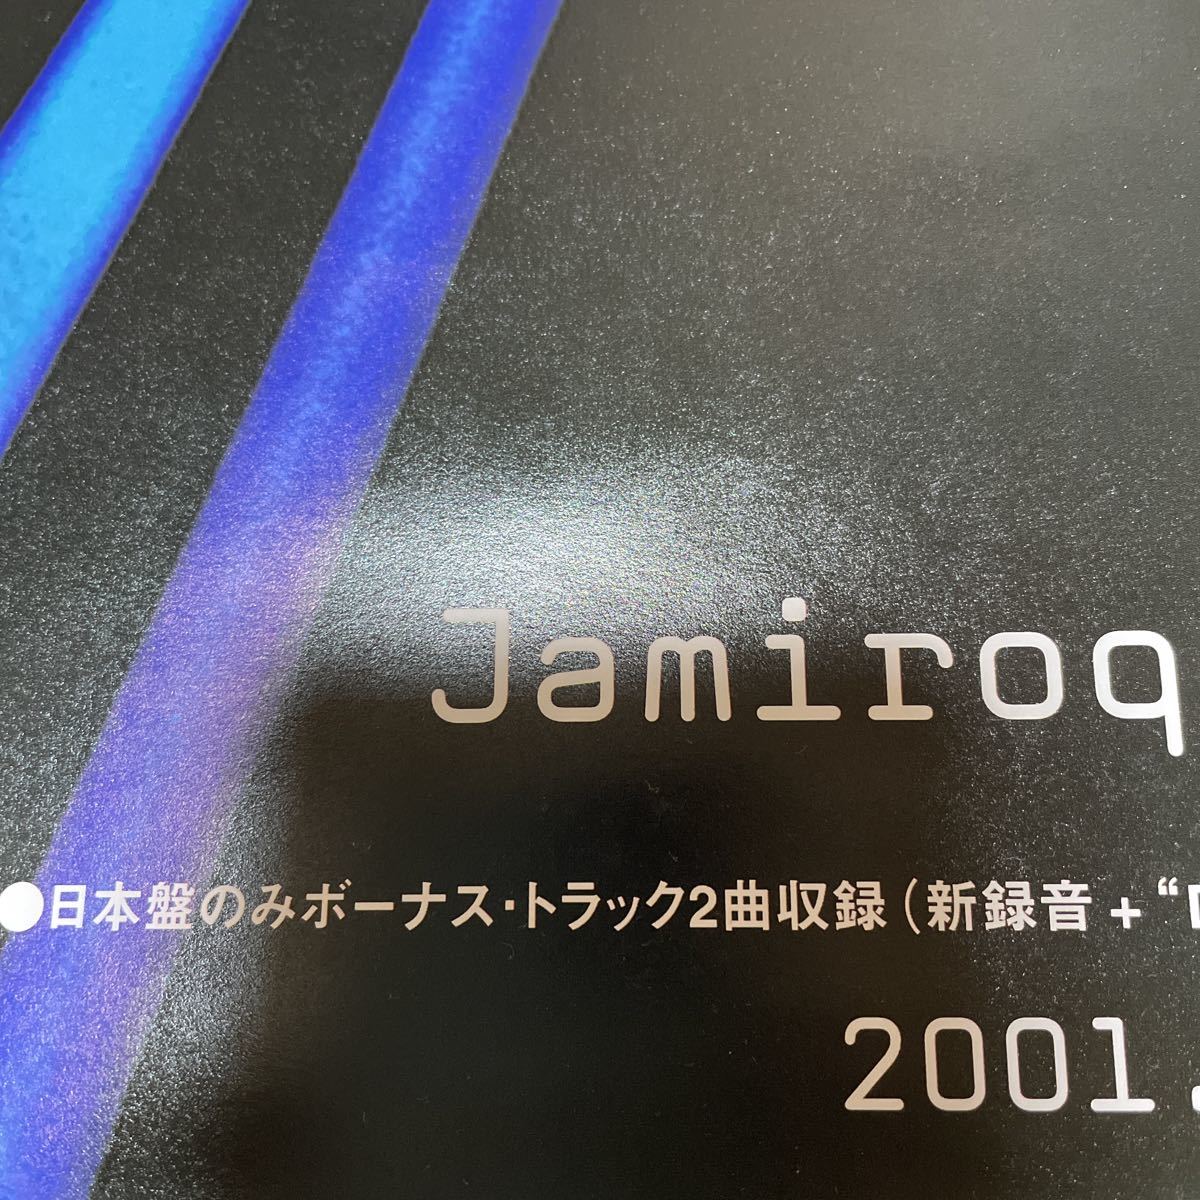 ジャミロクワイ JAMIROQUAI A funk odyssey 2001年 店頭告知ポスター 51.5×73cm EPIC ピン跡なしの画像8